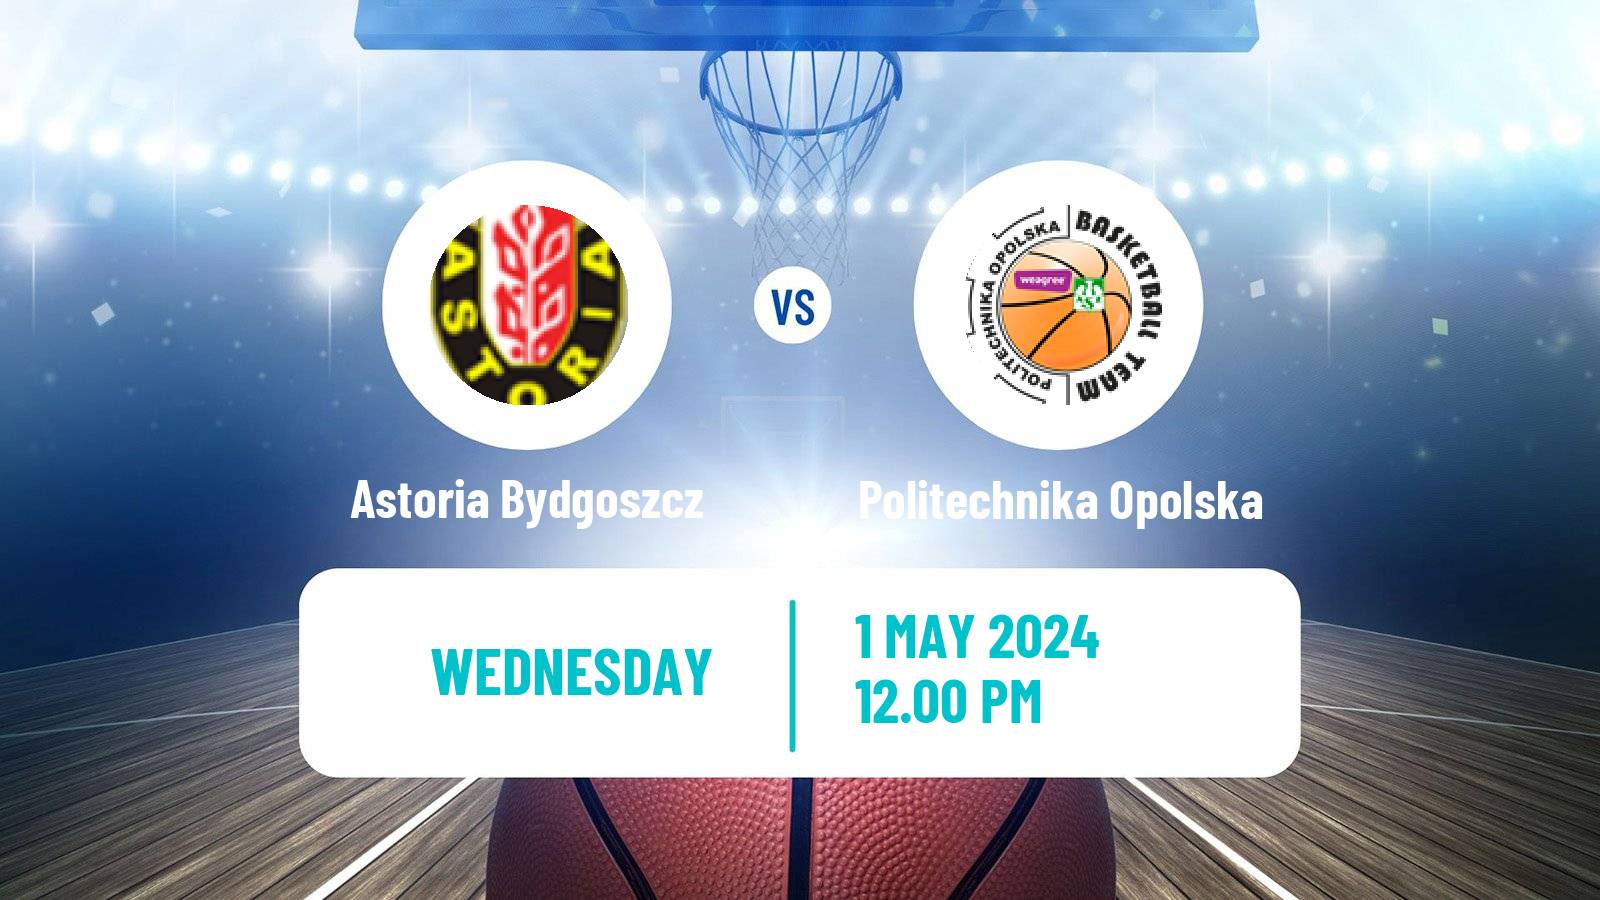 Basketball Polish 1 Liga Basketball Astoria Bydgoszcz - Politechnika Opolska